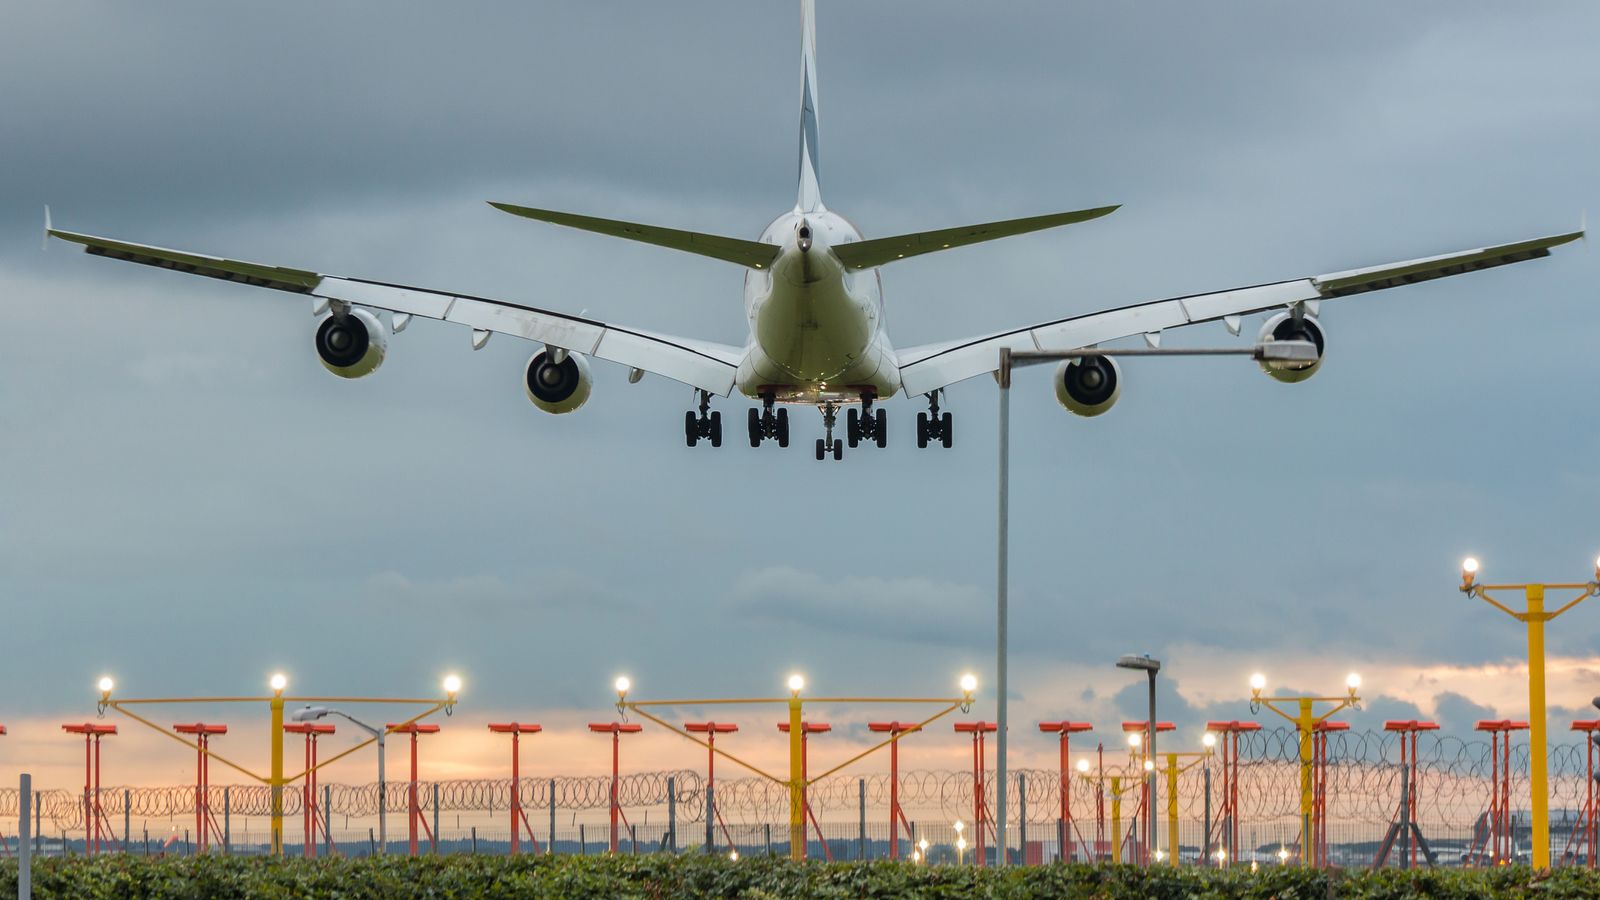 Le nombre de passagers de l’aéroport d’Heathrow s’améliore mais reste inférieur aux niveaux d’avant la pandémie |  Actualité économique